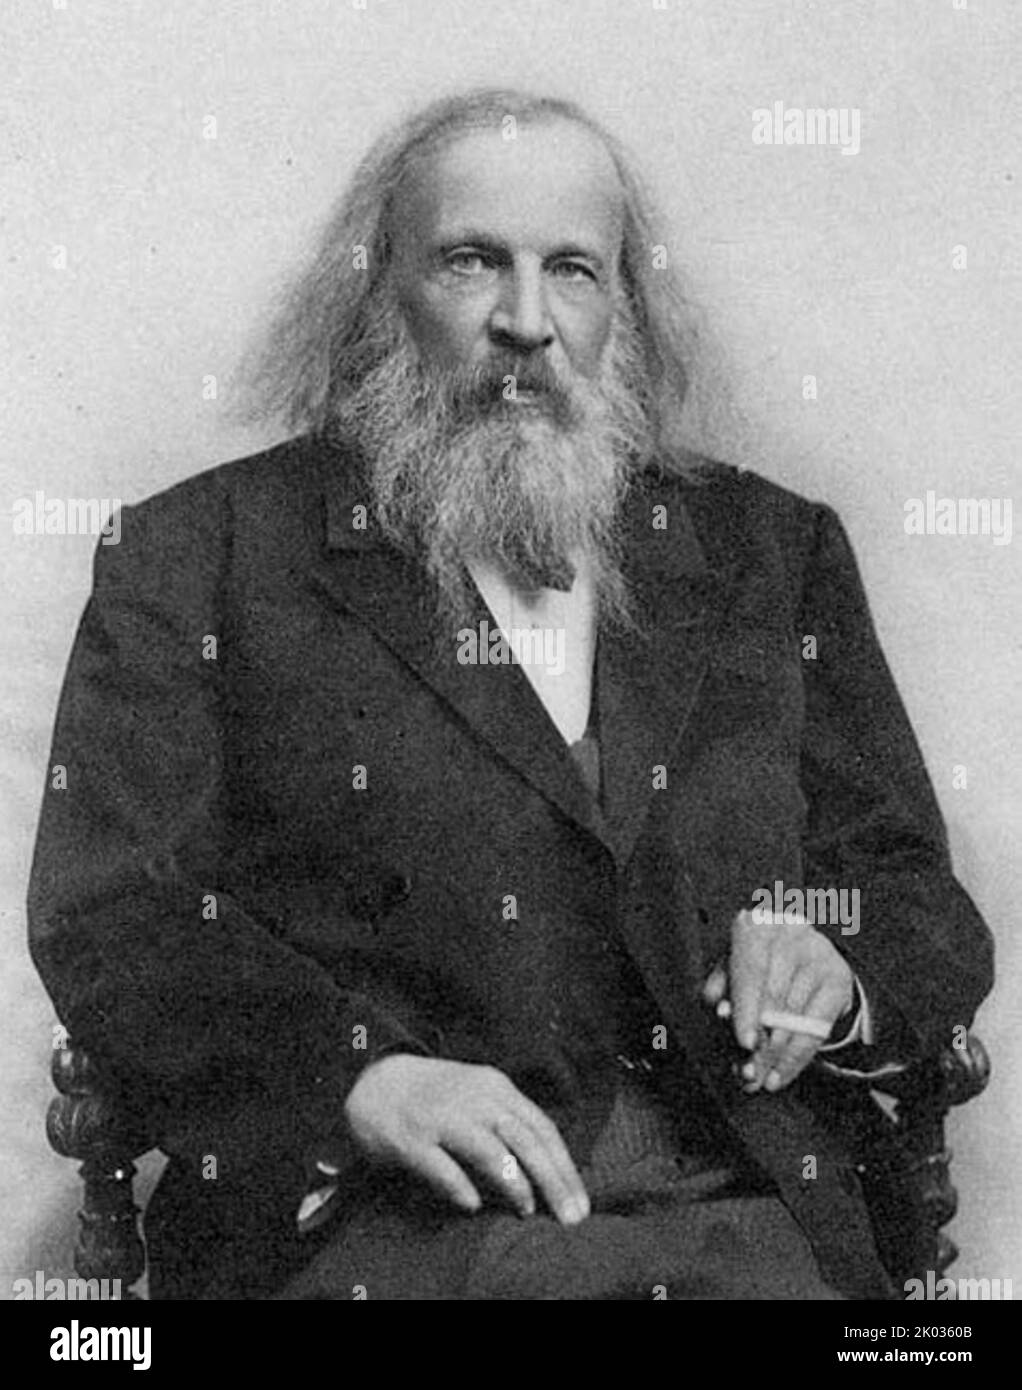 Dmitri Ivanovich Mendeleev (1834 - 1907) chimico e inventore russo. È meglio ricordato per aver formulato la Legge periodica e per aver creato una versione lungimirante della tavola periodica degli elementi. Foto Stock